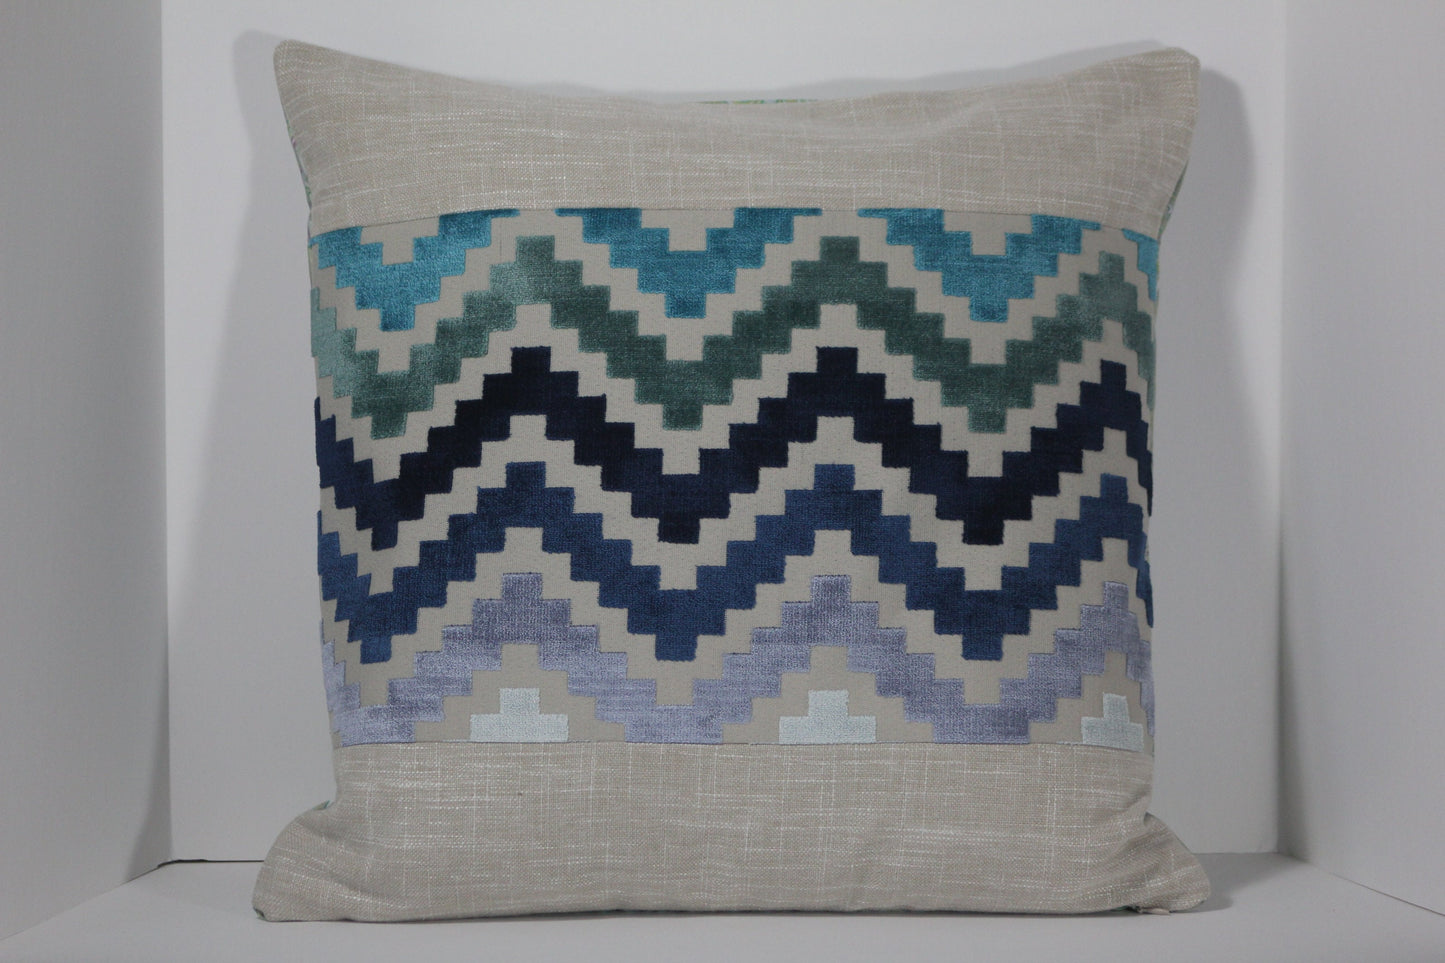 Ziggurat design blue cut velvet 20" panel pillow cover